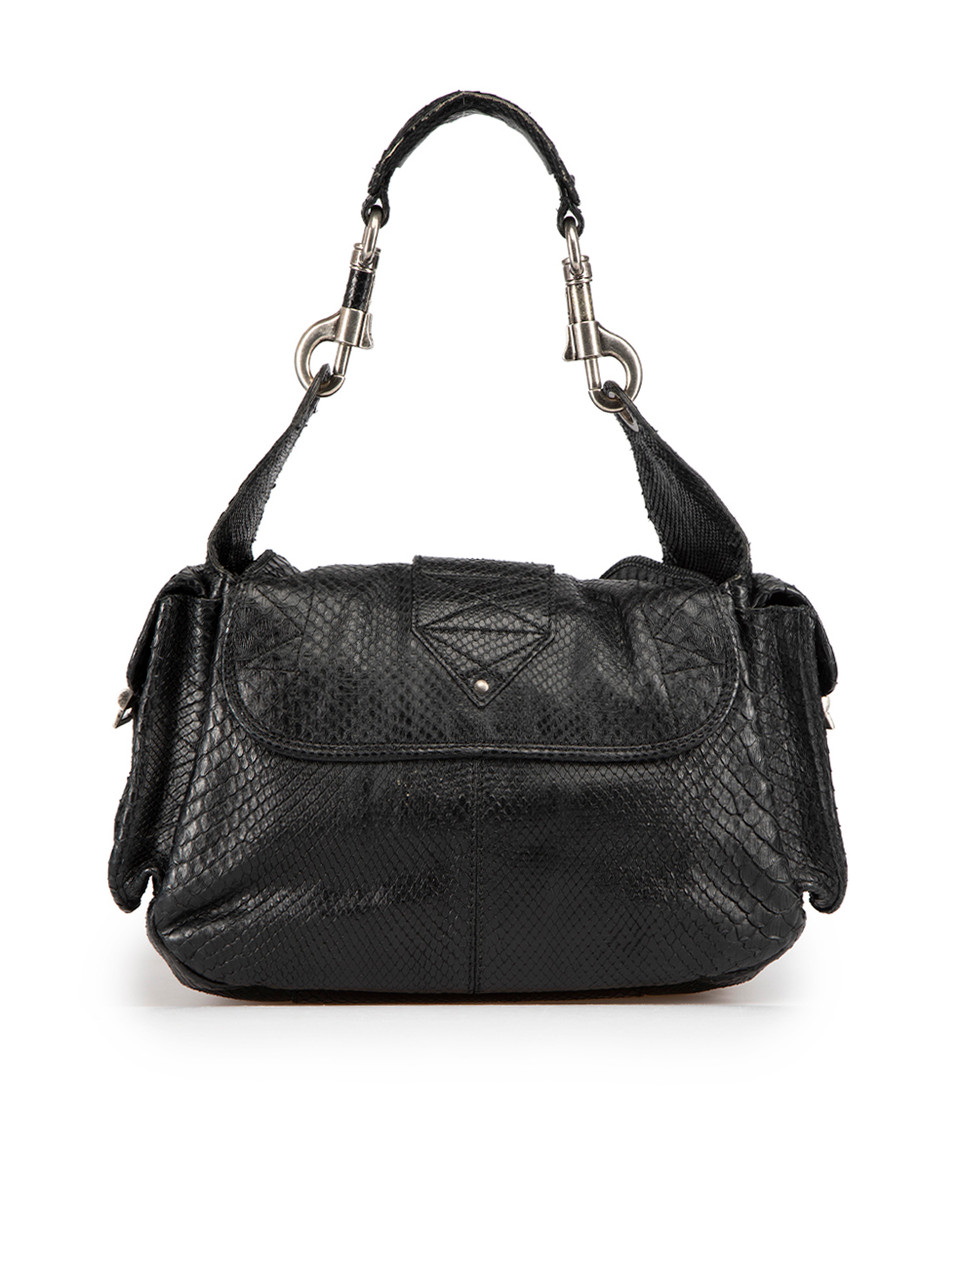 Dior Limited Edition Black Snakeskin Shoulder Bag